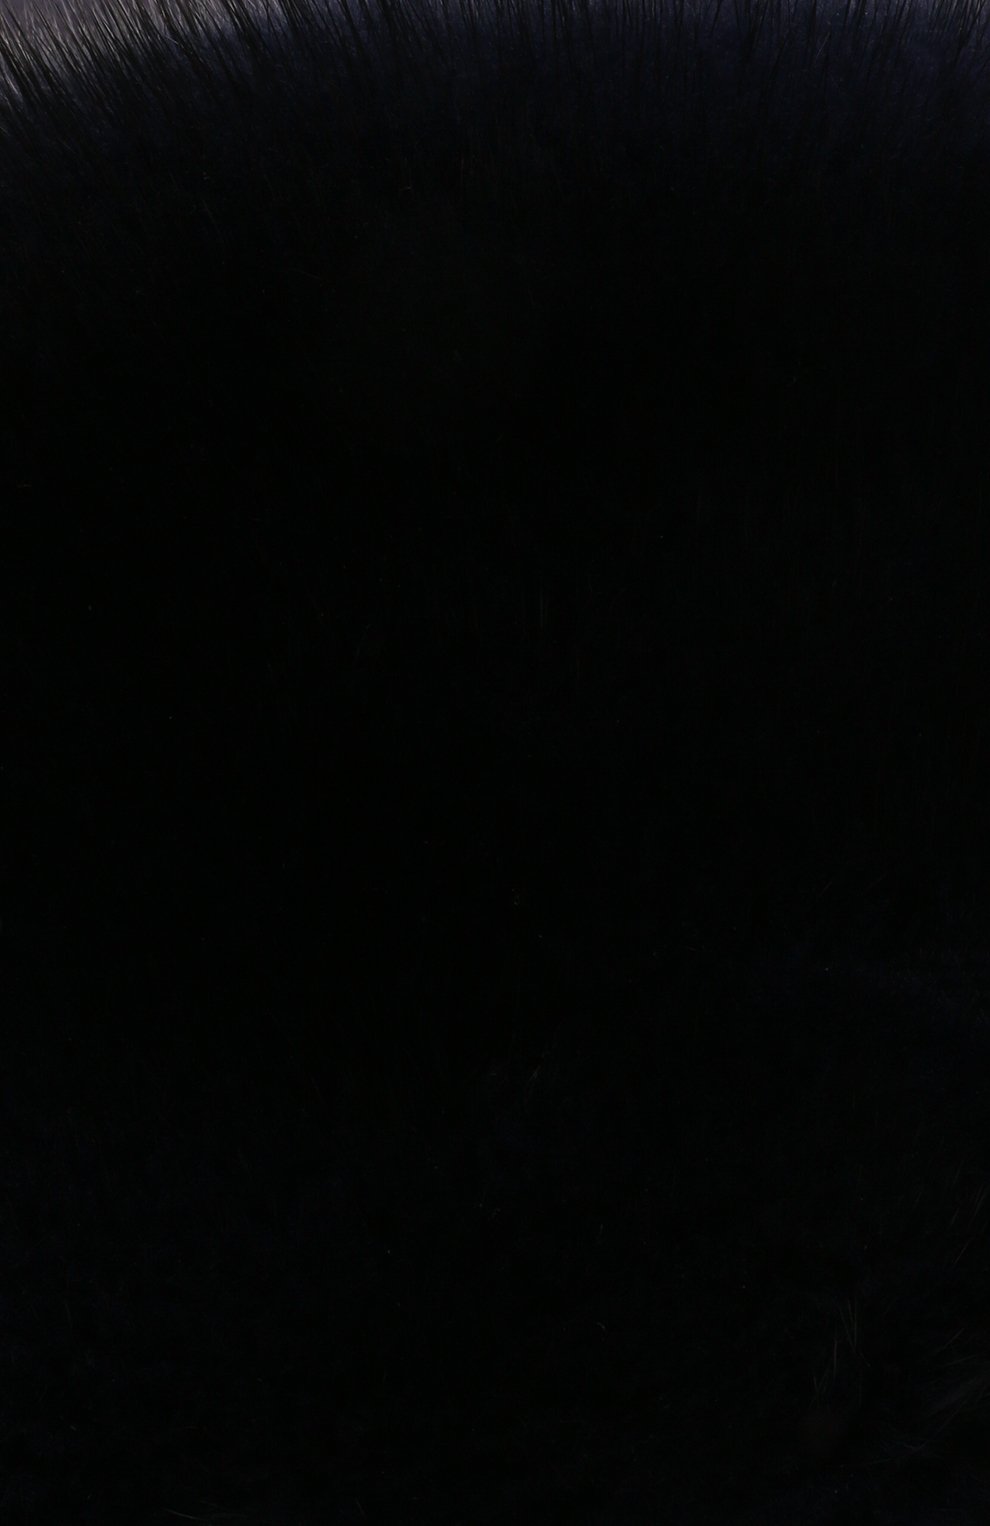 Мужская кашемировая шапка с меховой отделкой ZILLI темно-синего цвета, арт. MHQ-0RS0M-30337/1002 | Фото 3 (Материал: Текстиль, Кашемир, Шерсть)